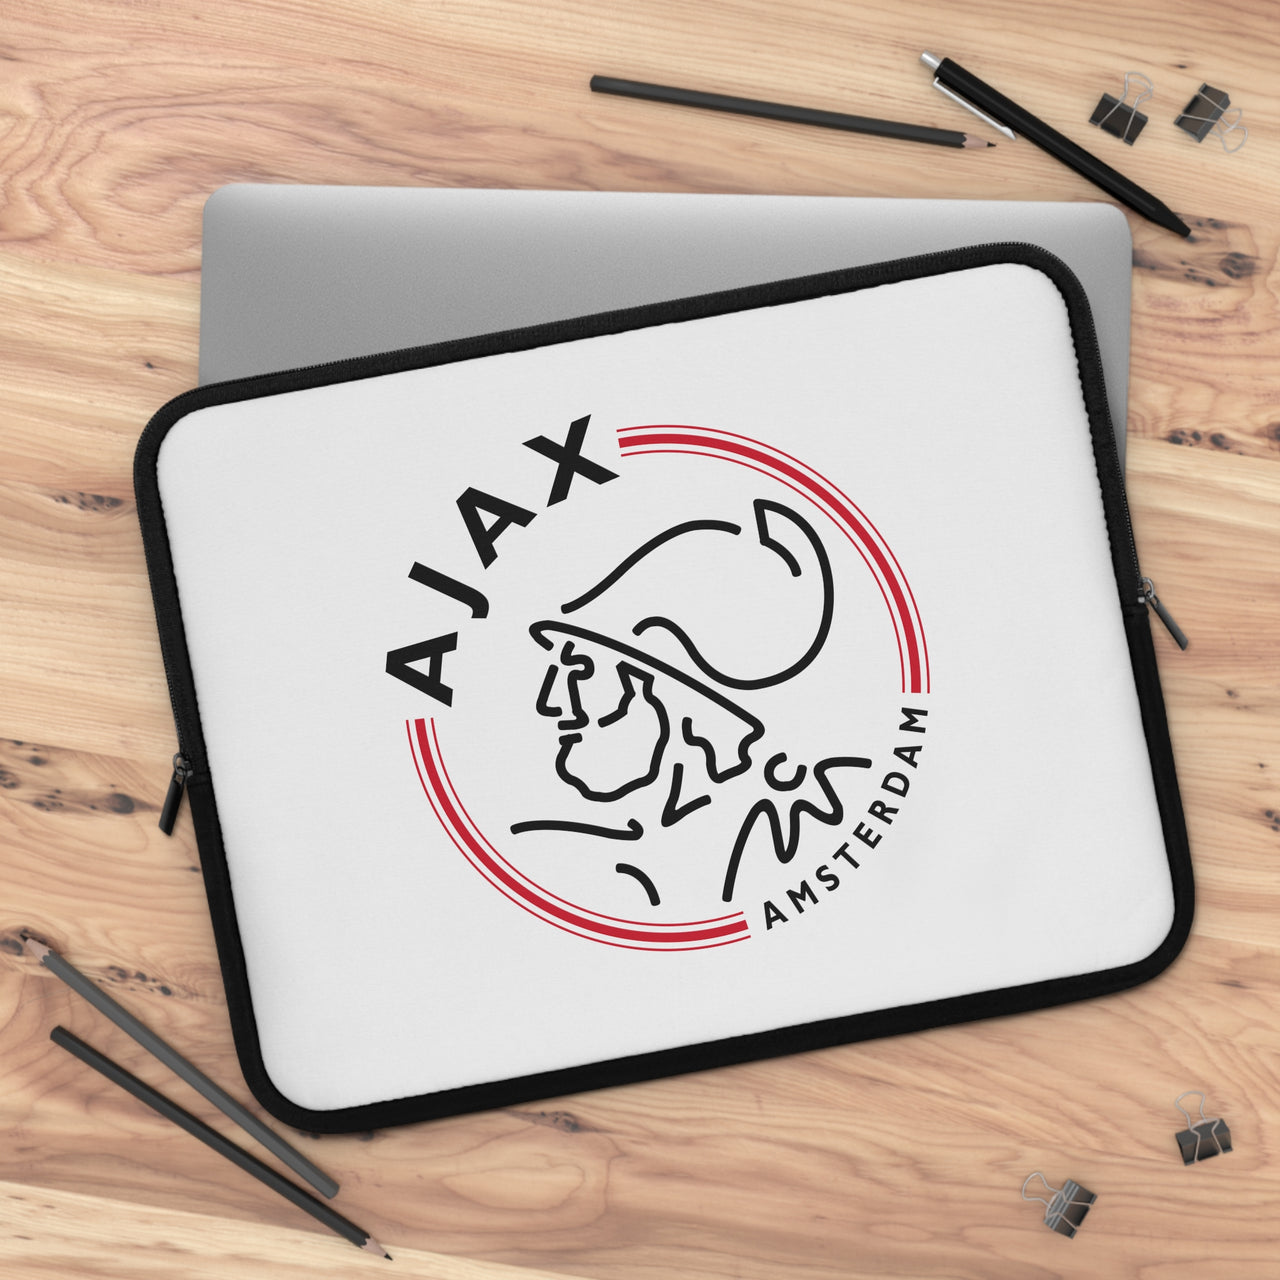 Ajax Laptop Sleeve